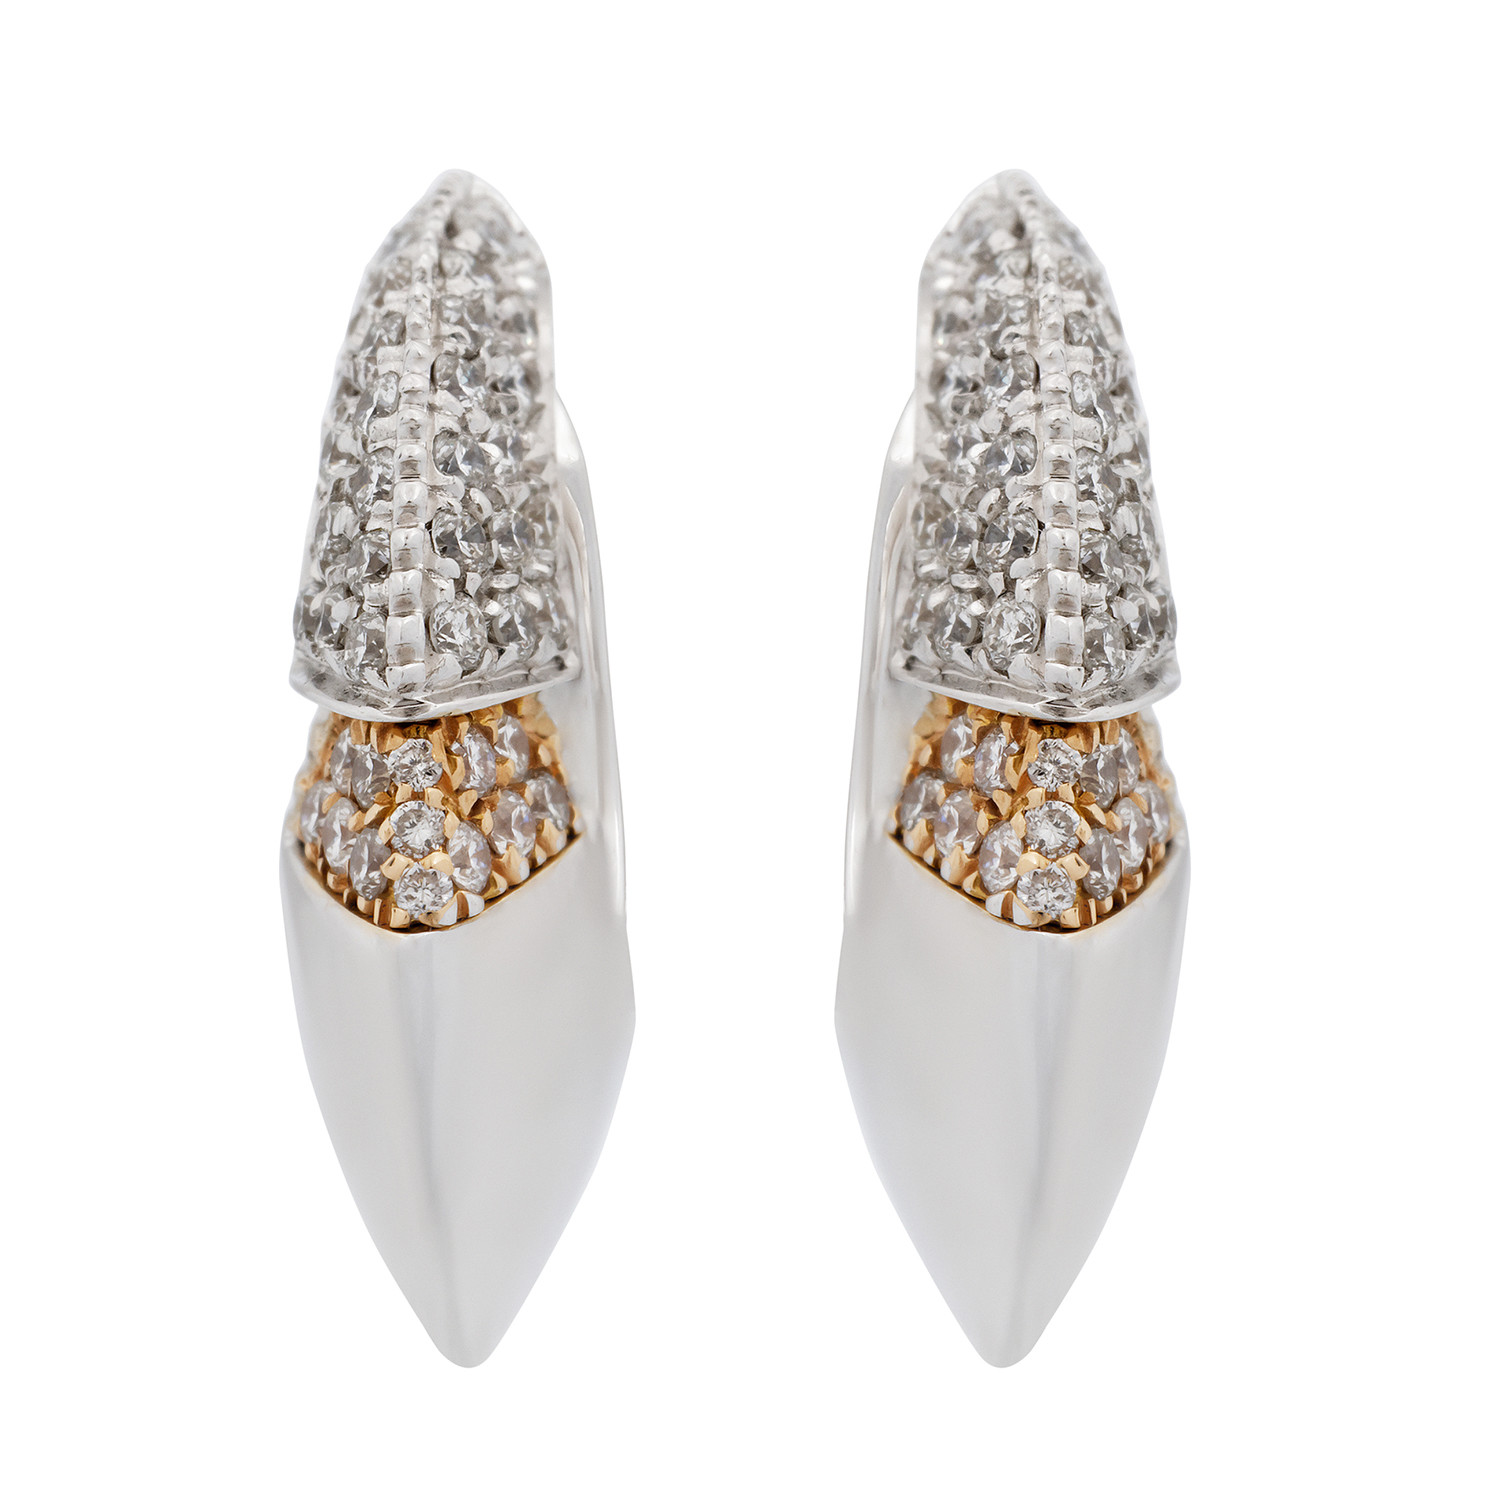 Chimento 18k Two-Tone Gold Diamond Earrings - Luxury Women's Jewelry ...